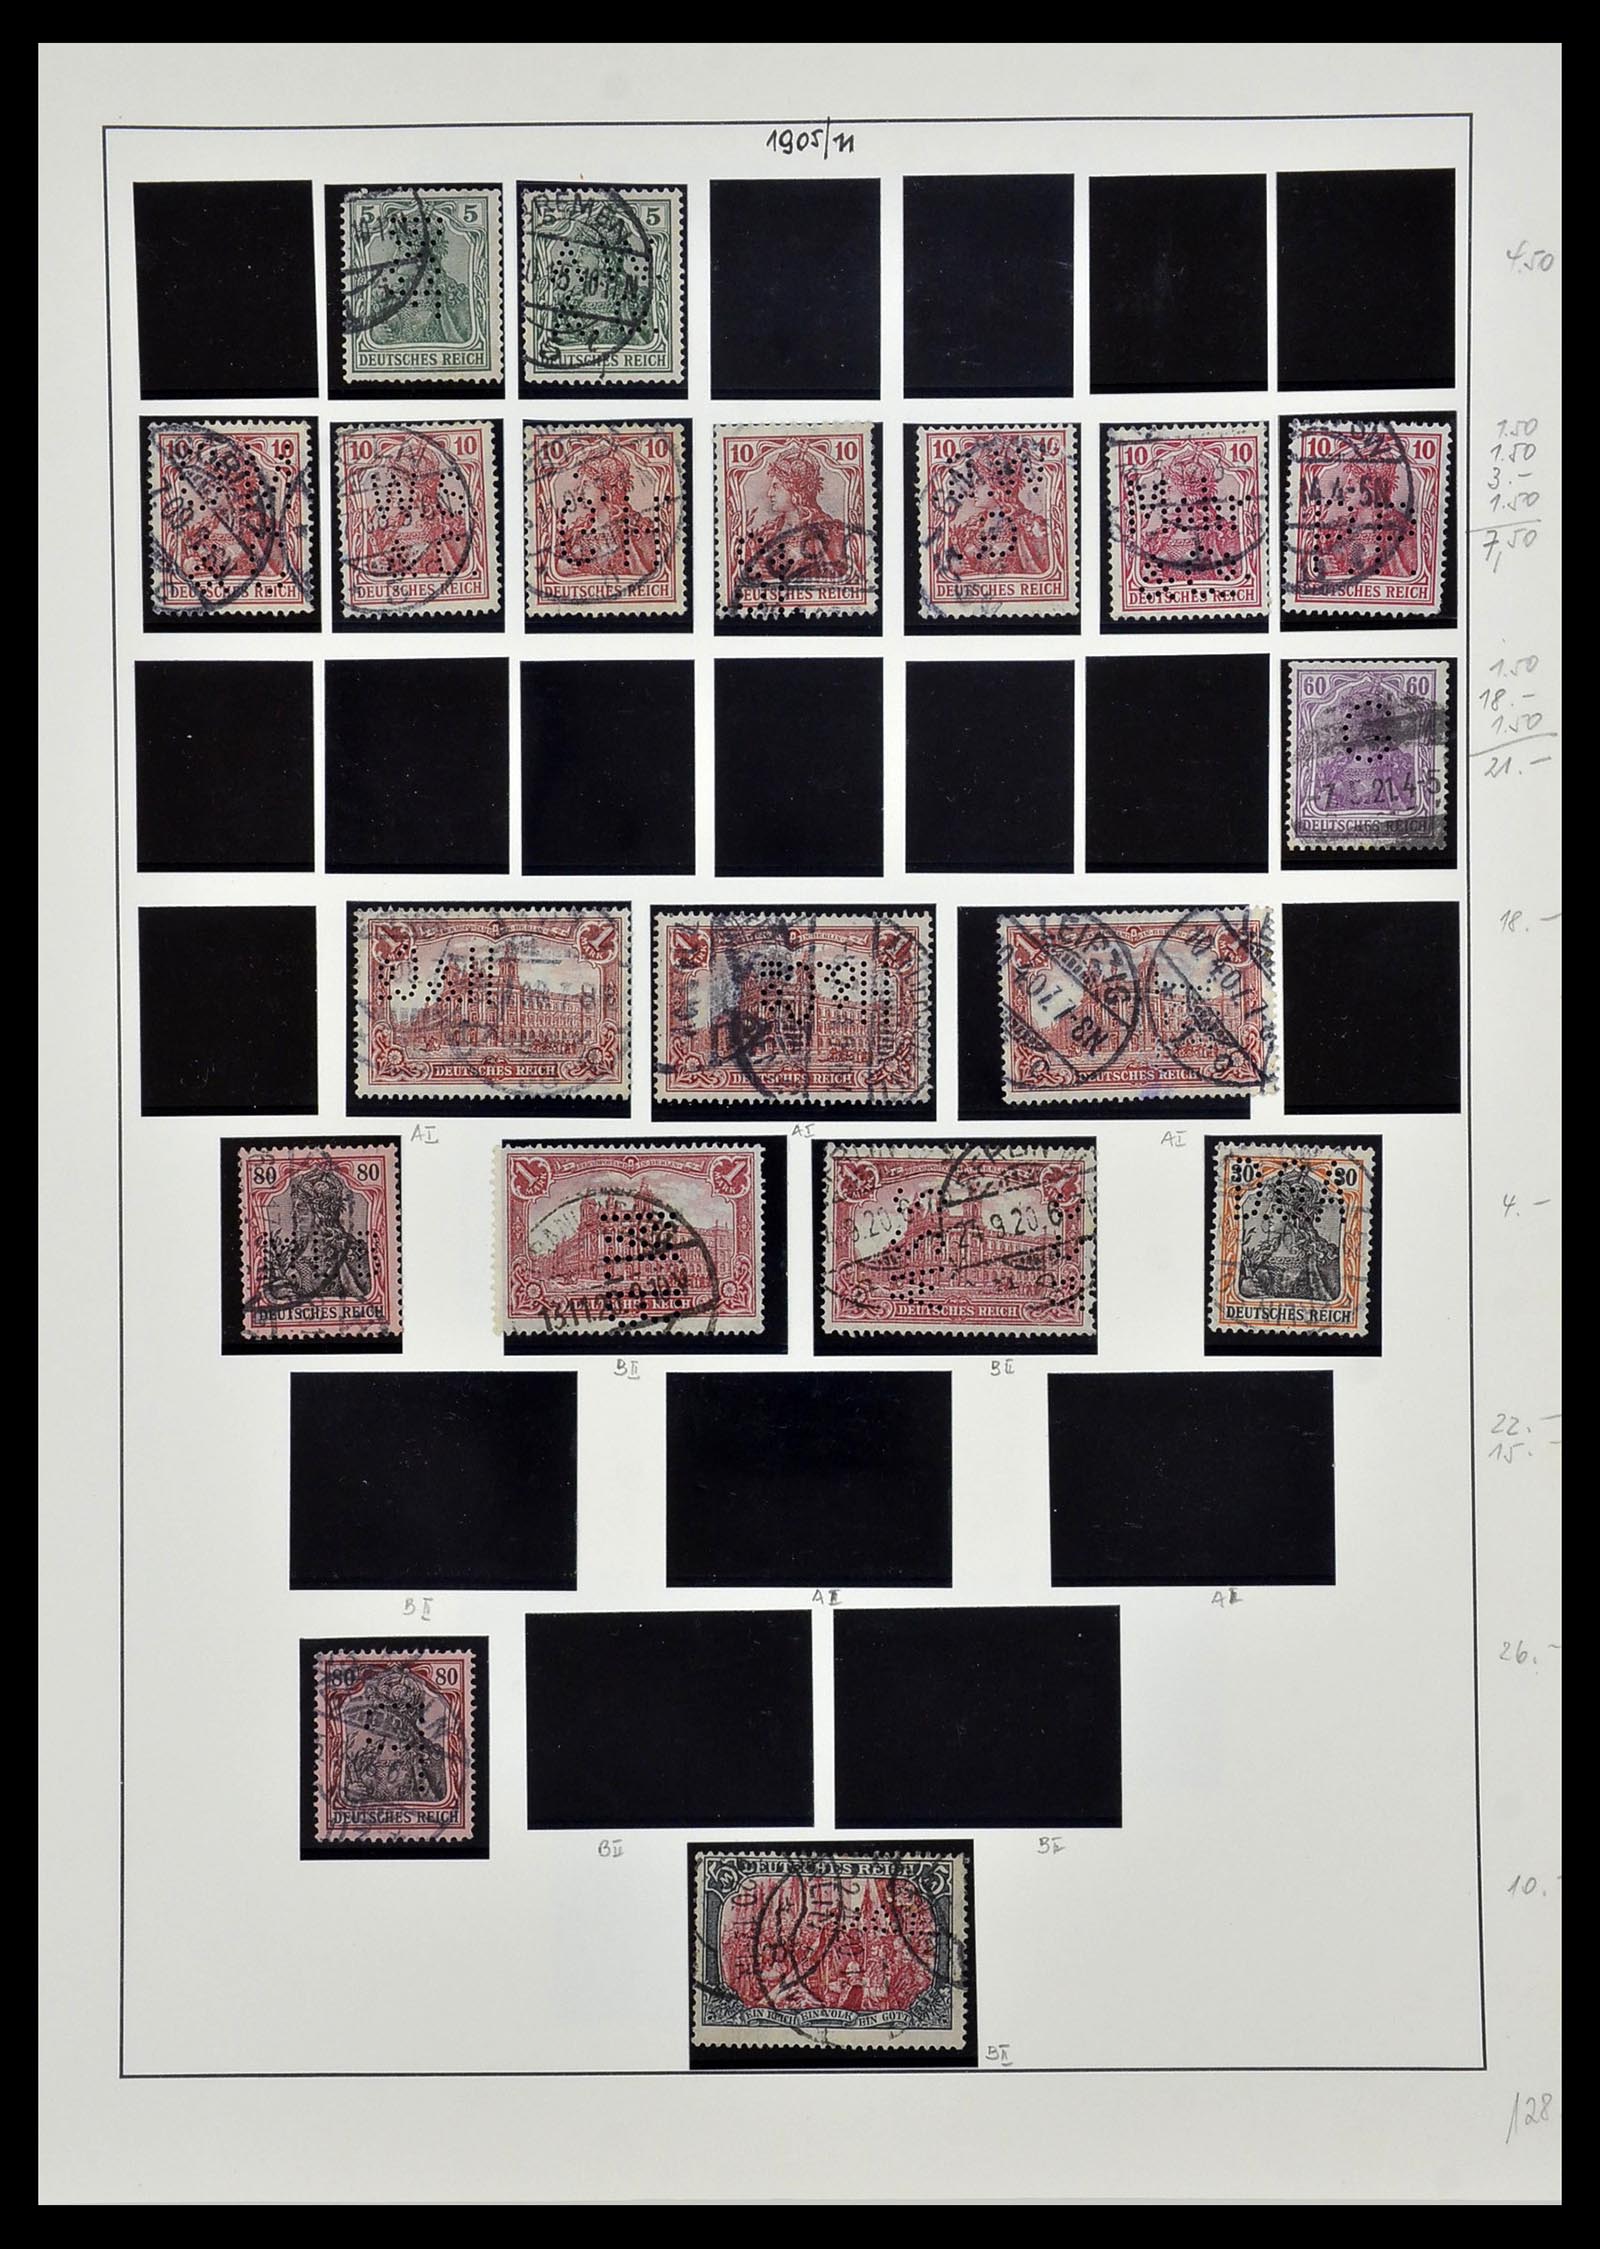 34409 005 - Stamp Collection 34409 German Reich perfins.